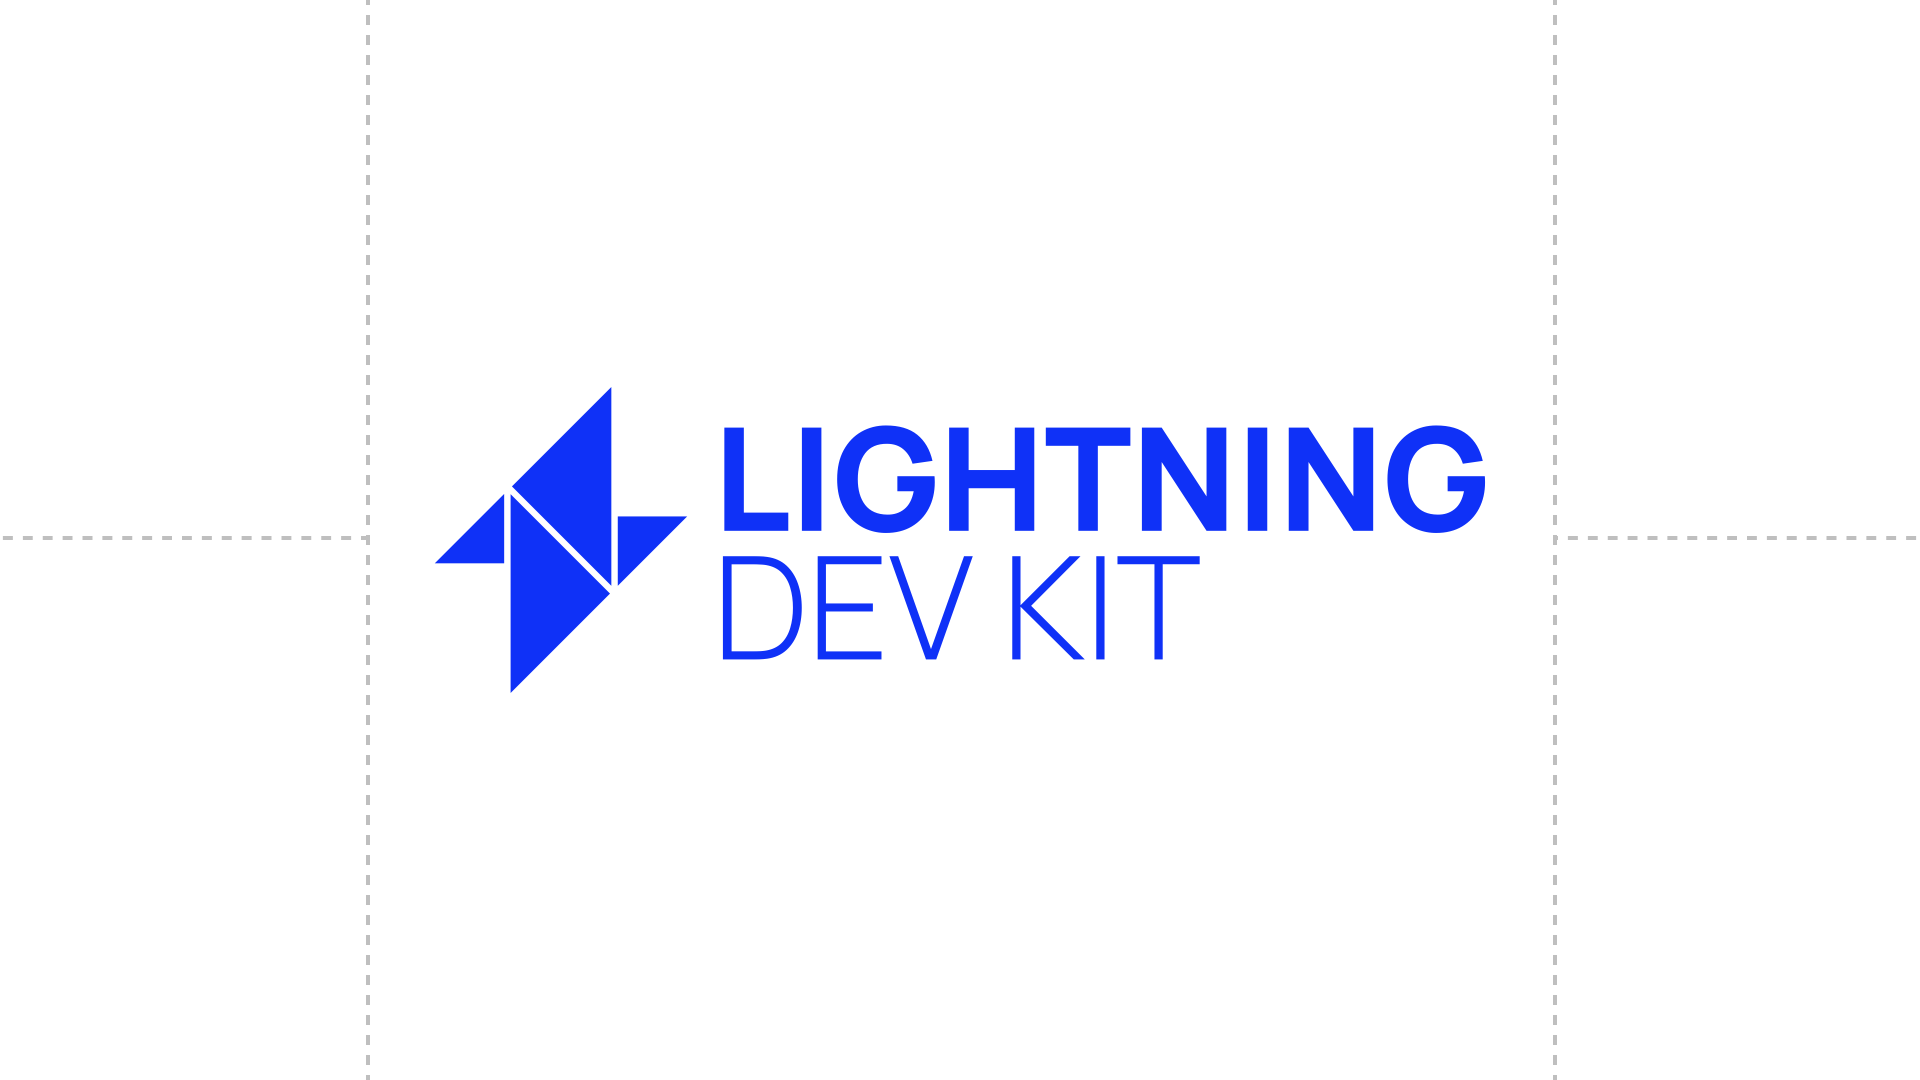 LDK Logo